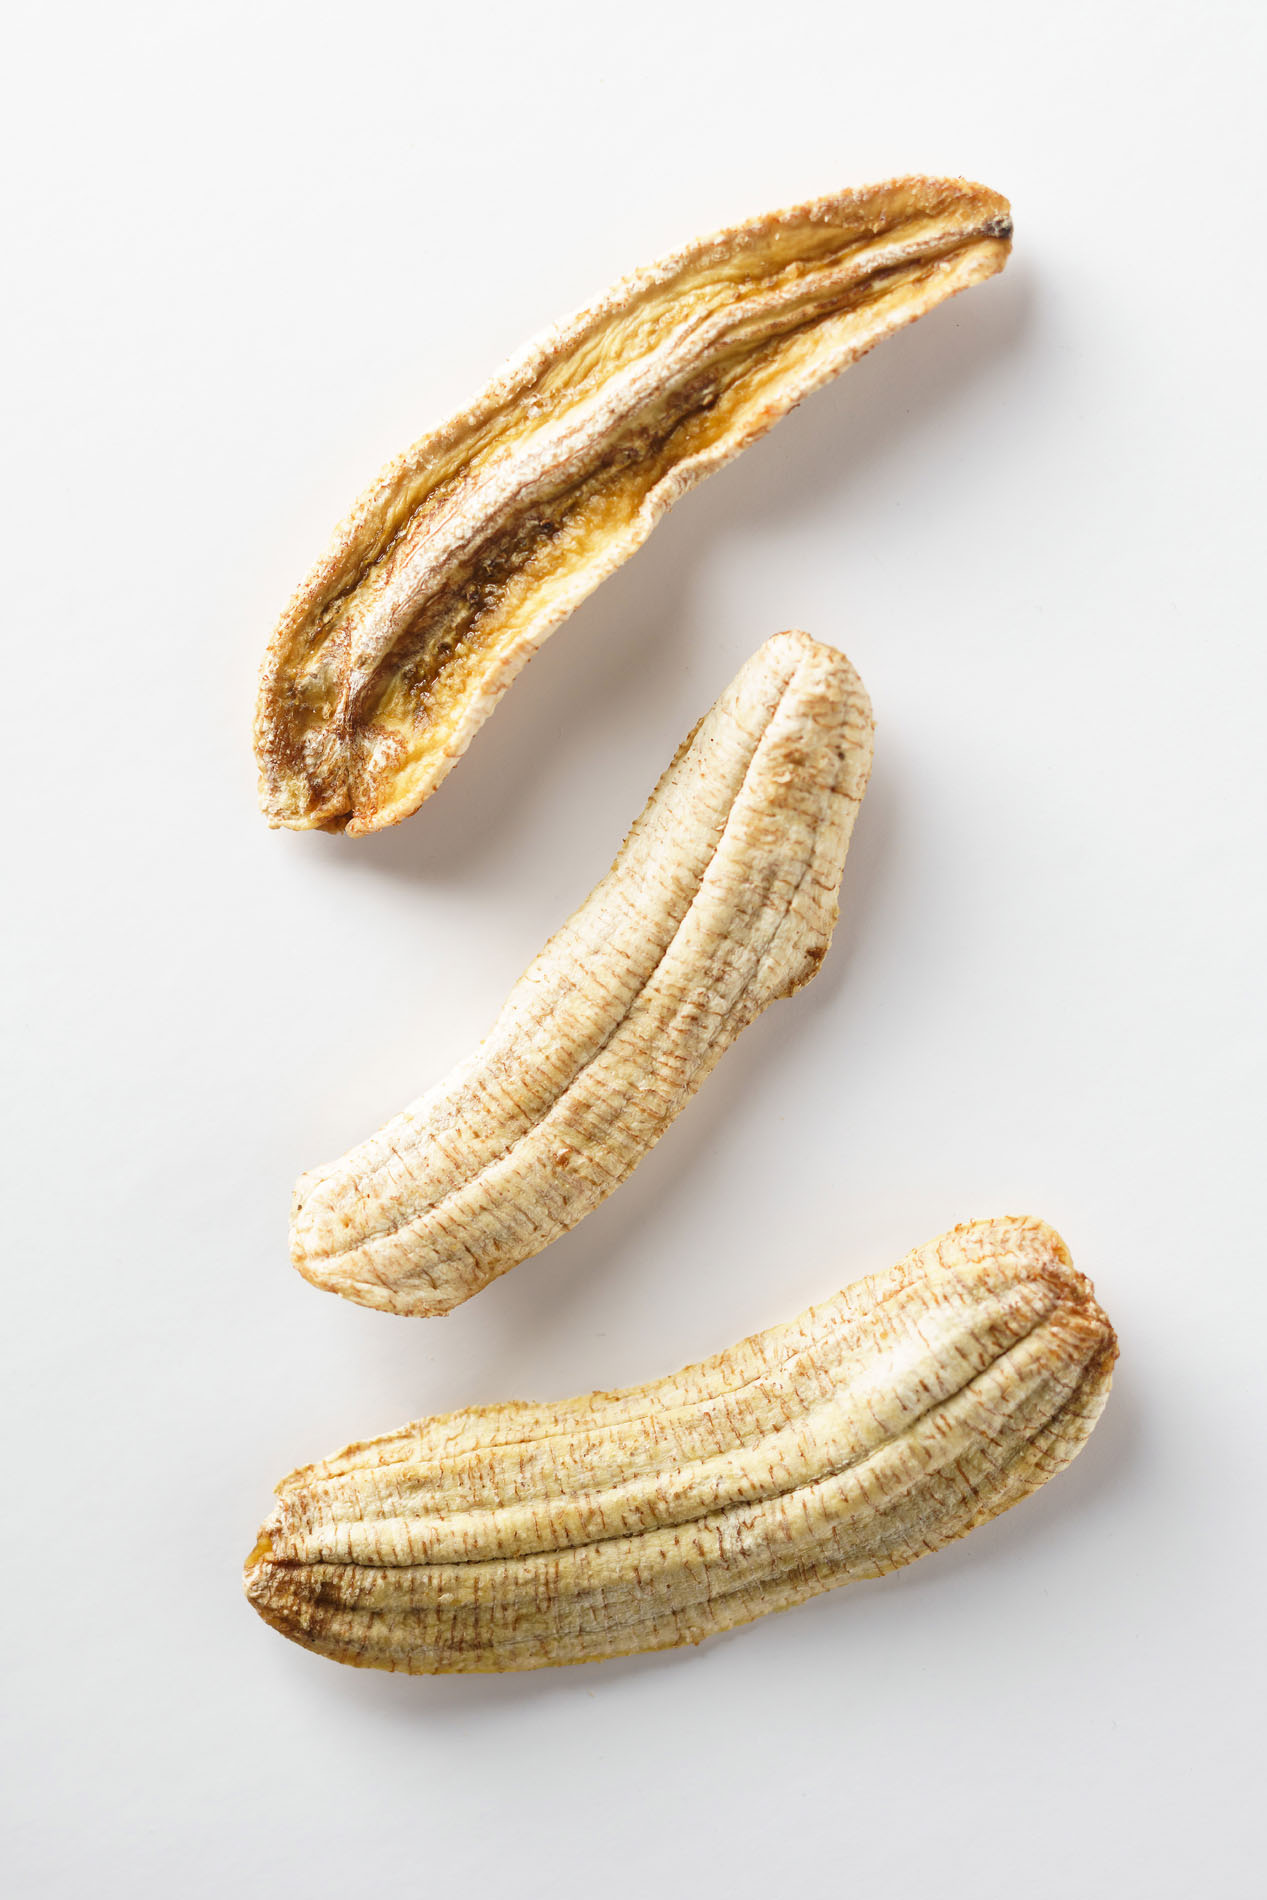 Banane - SÉCHÉE 100g